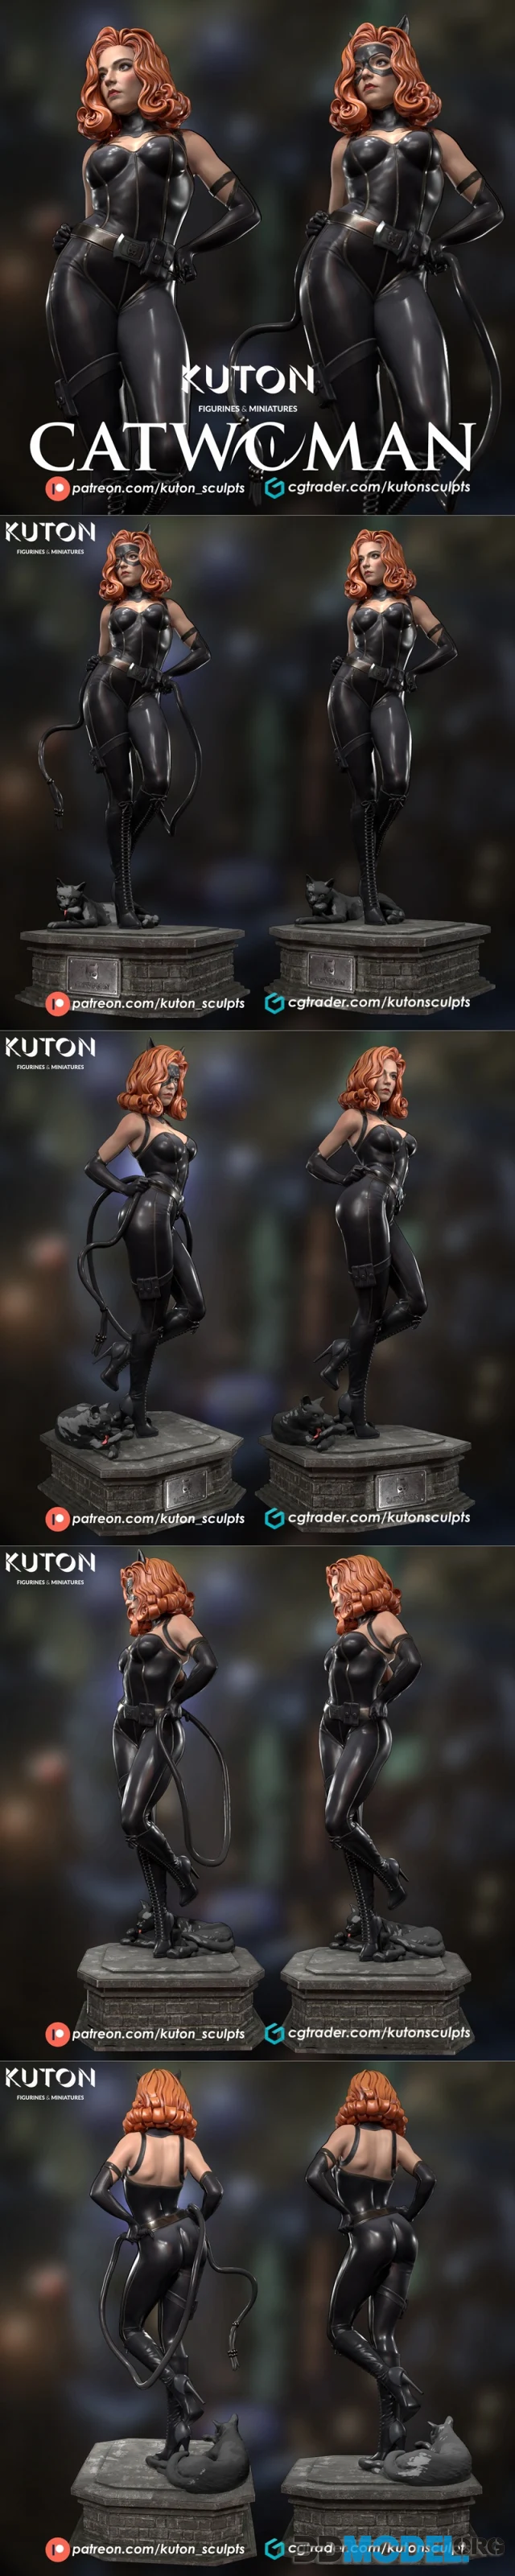 Kuton Figurines - Catwoman – Printable